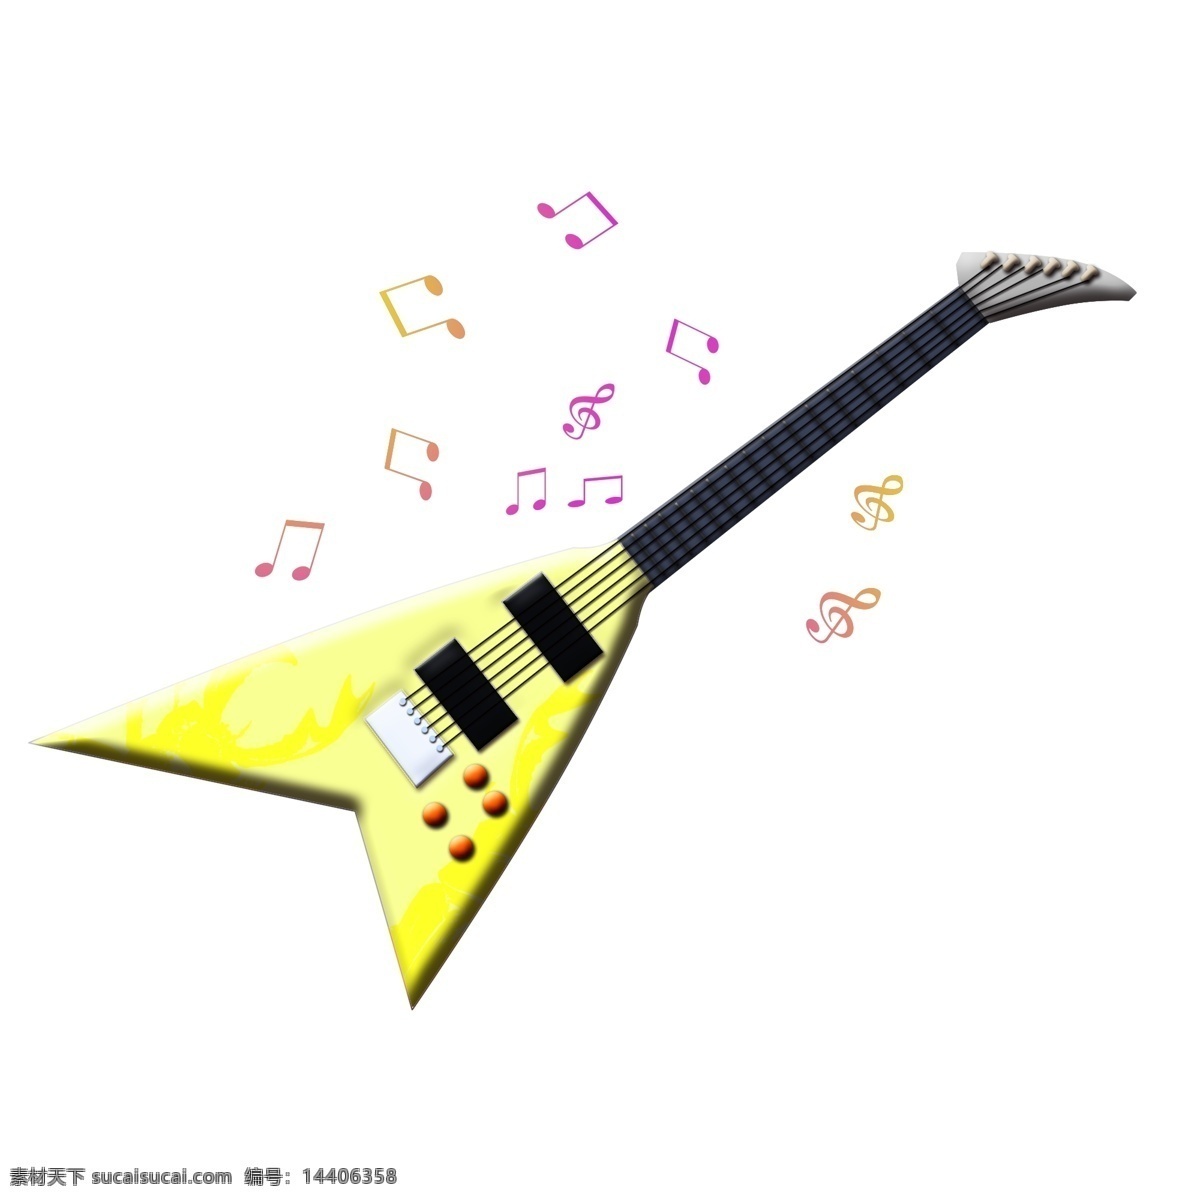 黄色 吉他 装饰 插画 黄色的吉他 乐器吉他 漂亮的吉他 创意吉他 立体吉他 卡通吉他 吉他装饰